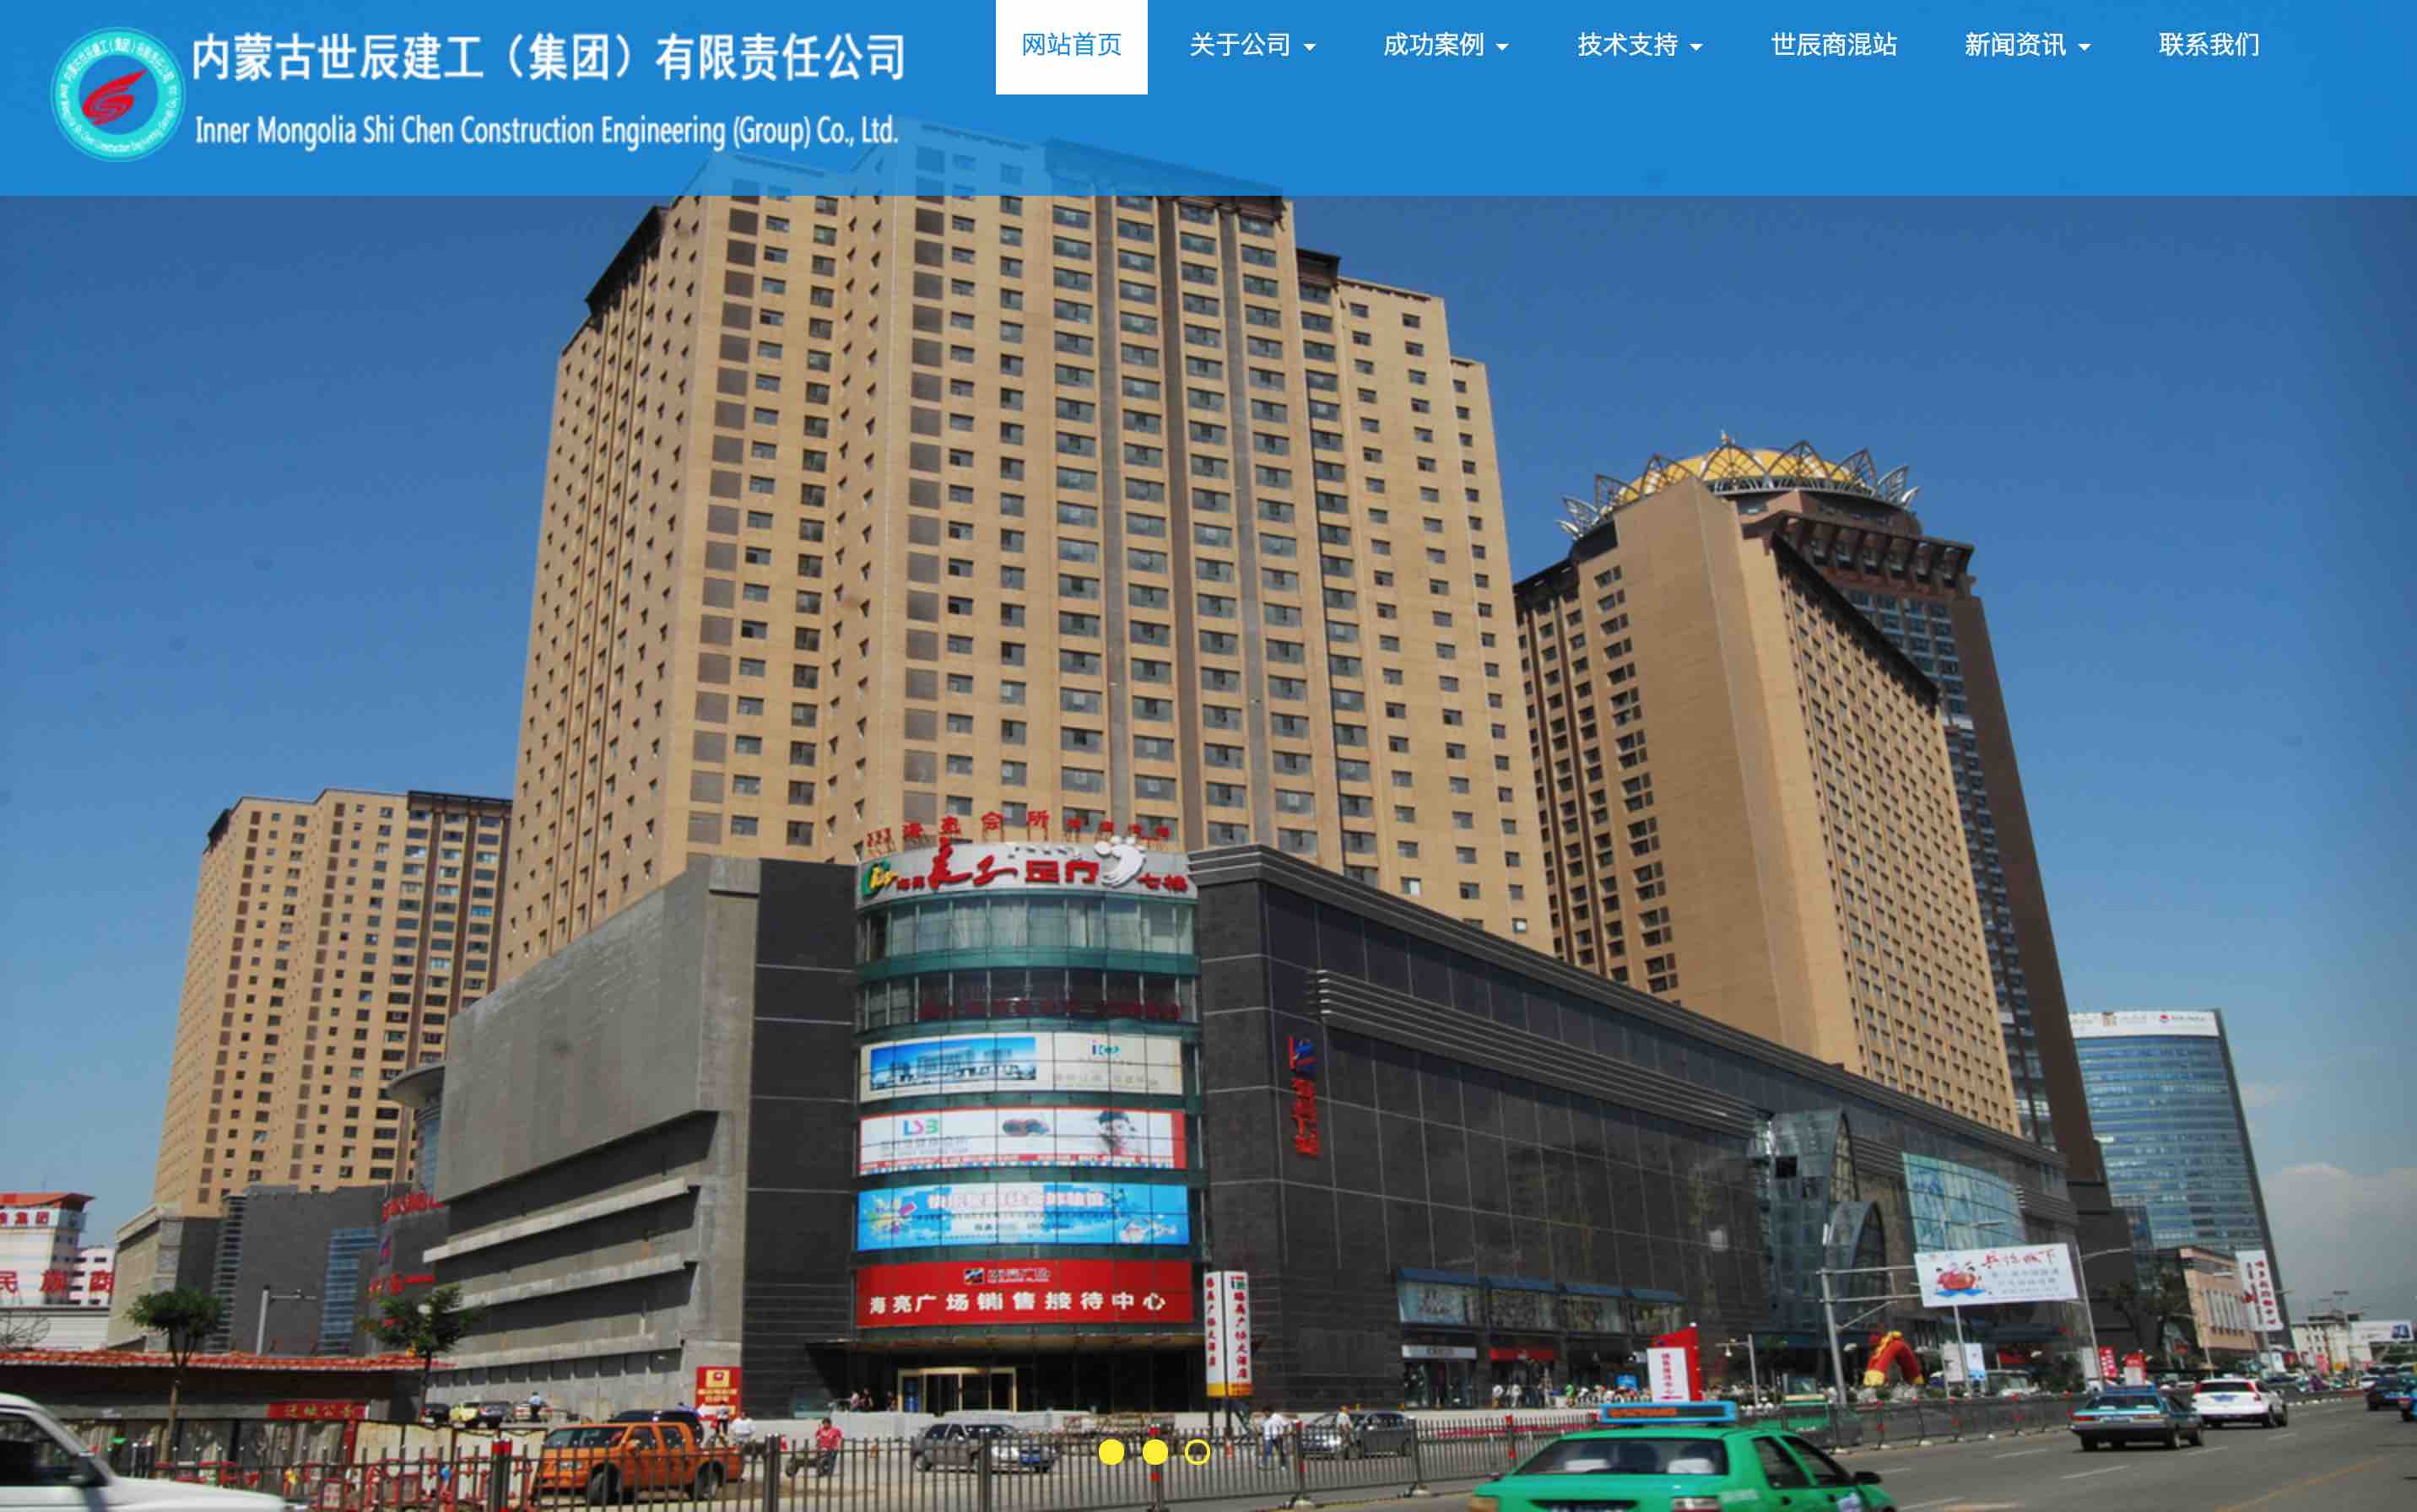 内蒙古世辰建工集团网站于2016年8月成功上线